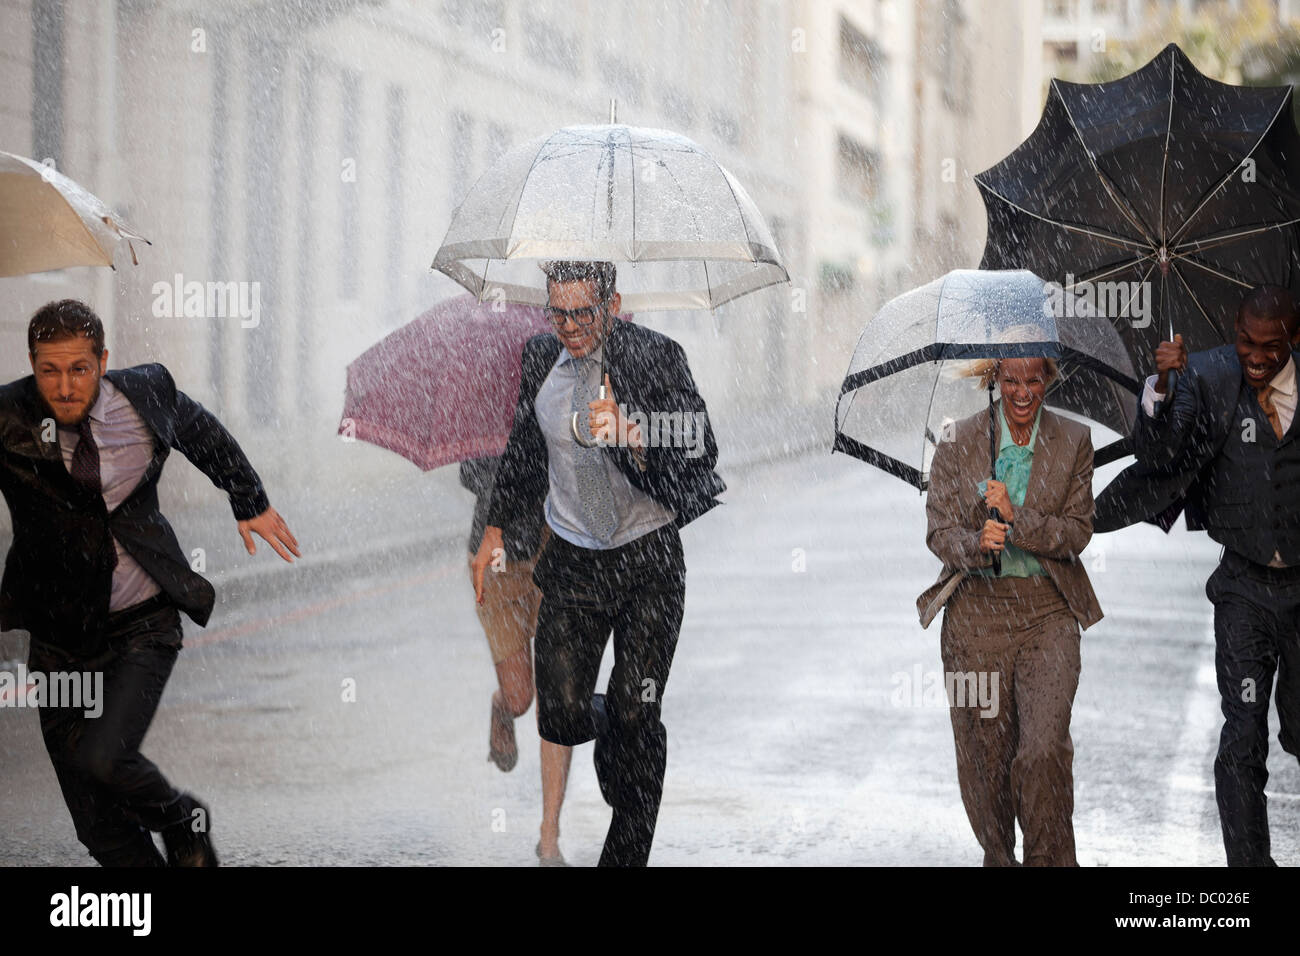 Les gens d'affaires enthousiastes avec parasols fonctionnant à Rainy Street Banque D'Images